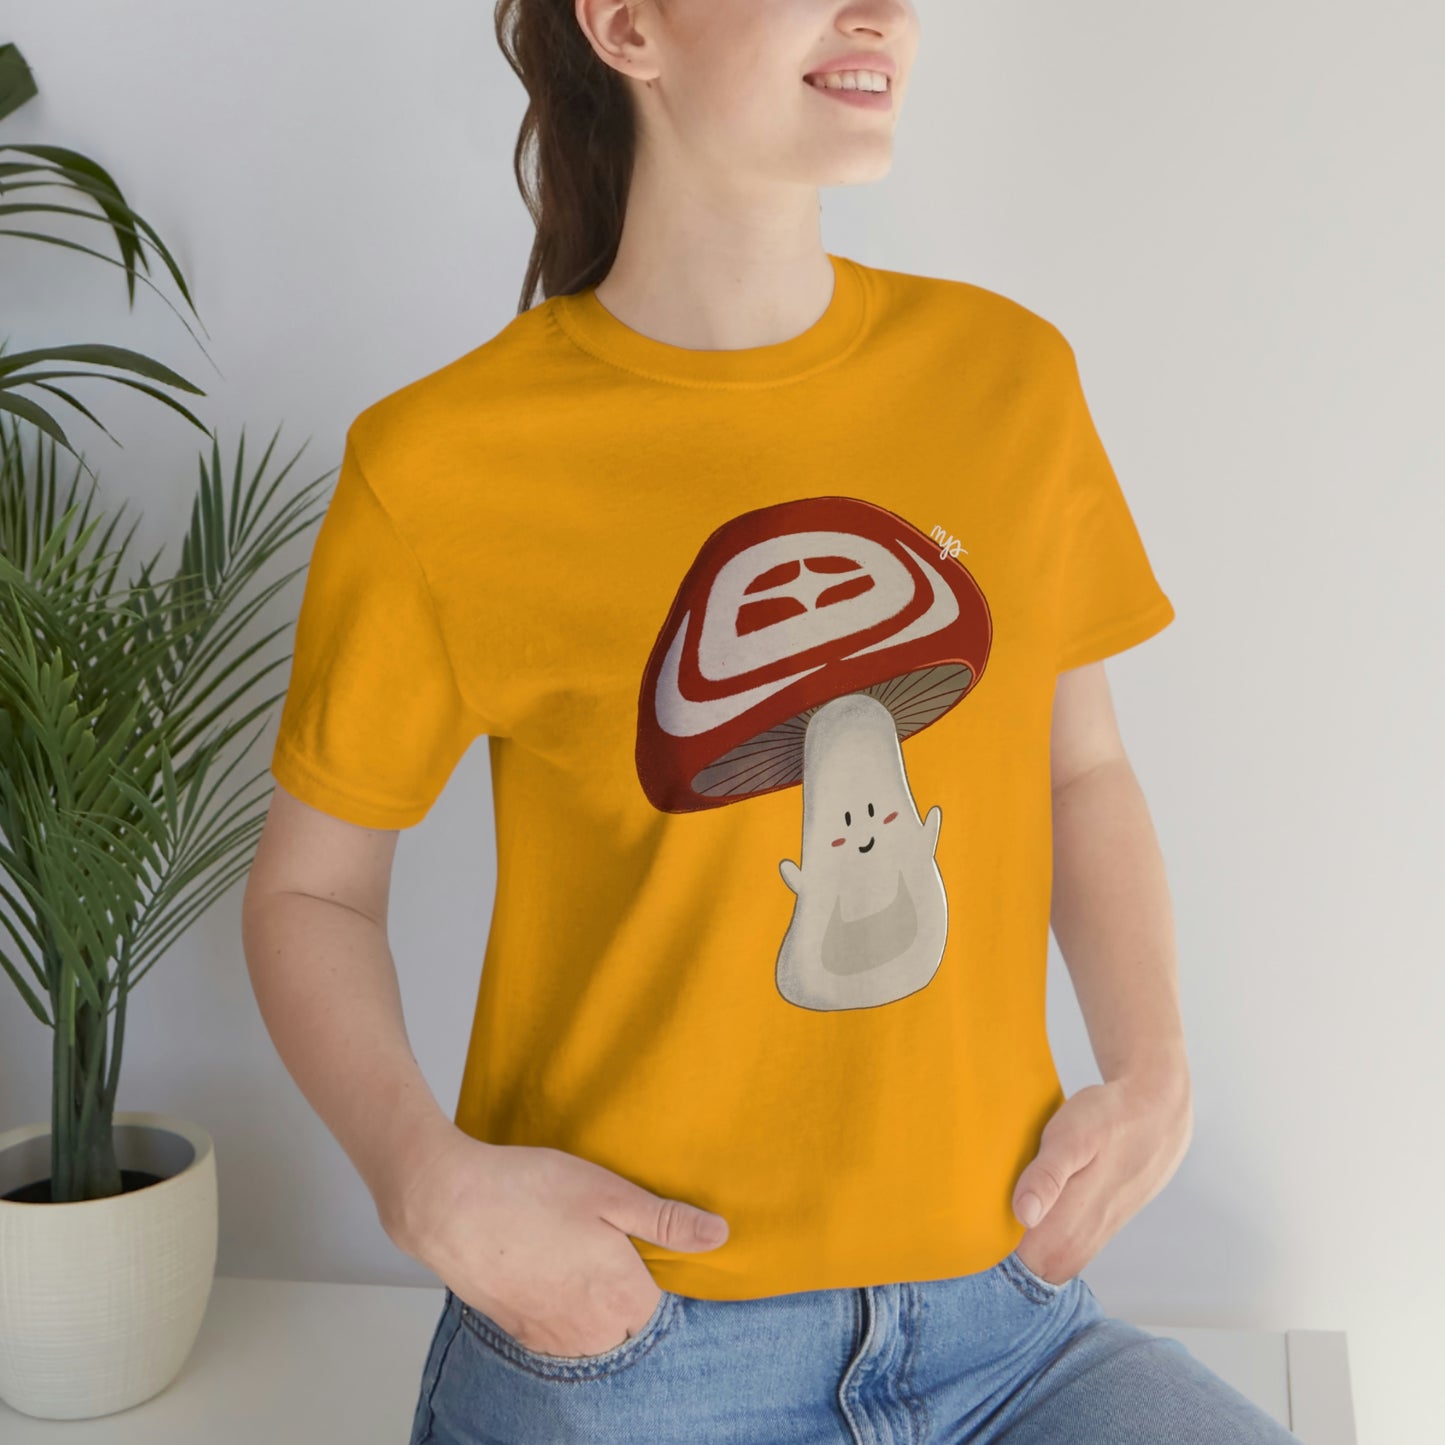 Coast Salish Mushroom T-Shirt Indigenous Design Cute Native American Mushroom